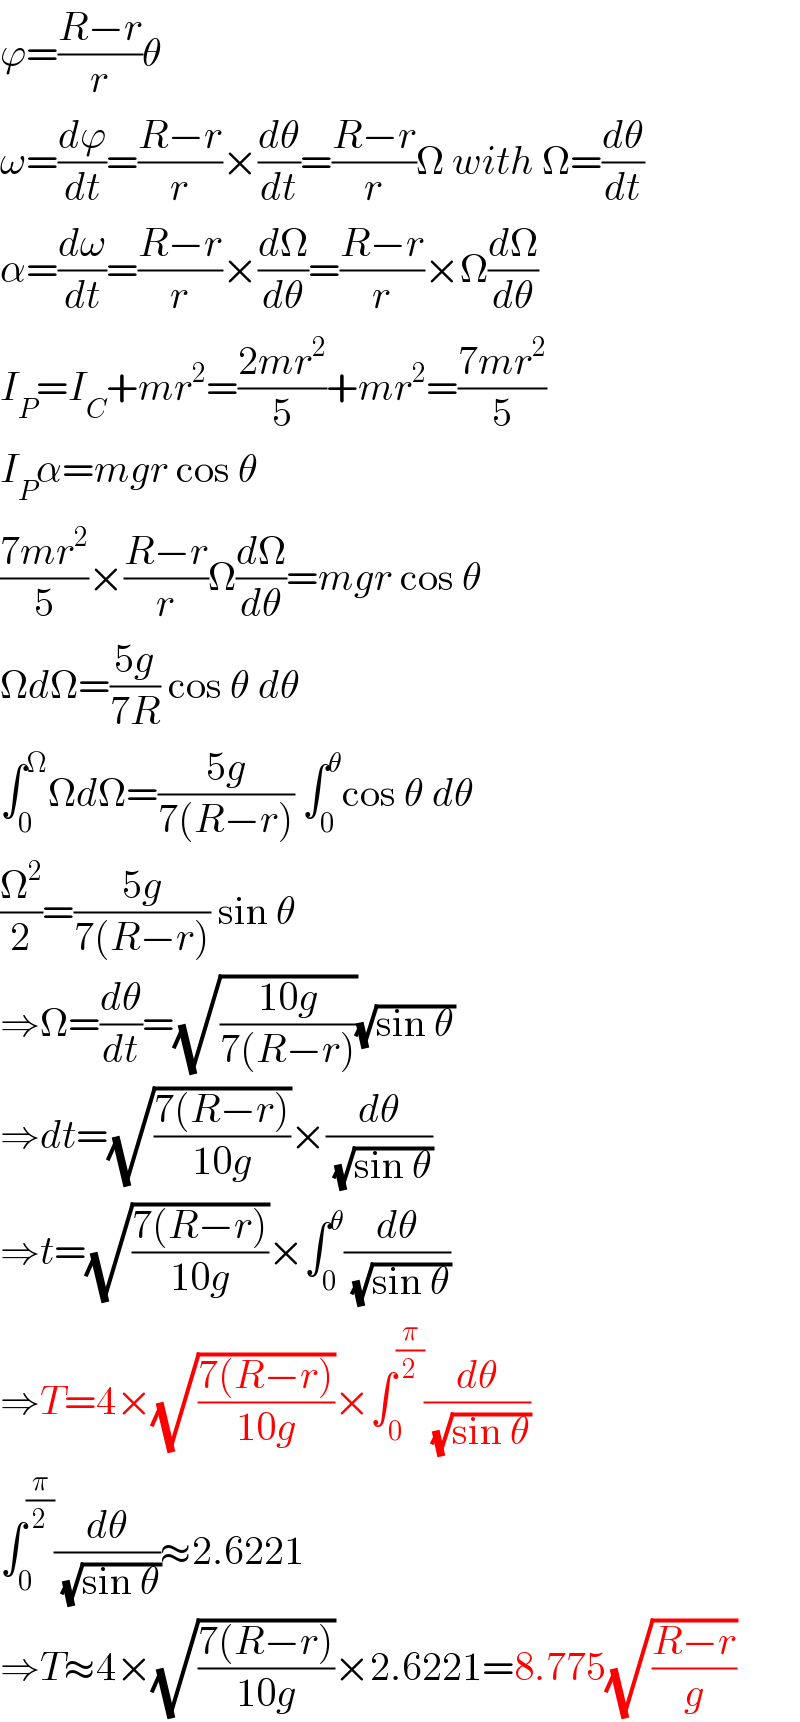 ϕ=((R−r)/r)θ  ω=(dϕ/dt)=((R−r)/r)×(dθ/dt)=((R−r)/r)Ω with Ω=(dθ/dt)  α=(dω/dt)=((R−r)/r)×(dΩ/dθ)=((R−r)/r)×Ω(dΩ/dθ)  I_P =I_C +mr^2 =((2mr^2 )/5)+mr^2 =((7mr^2 )/5)  I_P α=mgr cos θ  ((7mr^2 )/5)×((R−r)/r)Ω(dΩ/dθ)=mgr cos θ  ΩdΩ=((5g)/(7R)) cos θ dθ  ∫_0 ^Ω ΩdΩ=((5g)/(7(R−r))) ∫_0 ^θ cos θ dθ  (Ω^2 /2)=((5g)/(7(R−r))) sin θ  ⇒Ω=(dθ/dt)=(√((10g)/(7(R−r))))(√(sin θ))  ⇒dt=(√((7(R−r))/(10g)))×(dθ/(√(sin θ)))  ⇒t=(√((7(R−r))/(10g)))×∫_0 ^θ (dθ/(√(sin θ)))  ⇒T=4×(√((7(R−r))/(10g)))×∫_0 ^(π/2) (dθ/(√(sin θ)))  ∫_0 ^(π/2) (dθ/(√(sin θ)))≈2.6221  ⇒T≈4×(√((7(R−r))/(10g)))×2.6221=8.775(√((R−r)/g))  